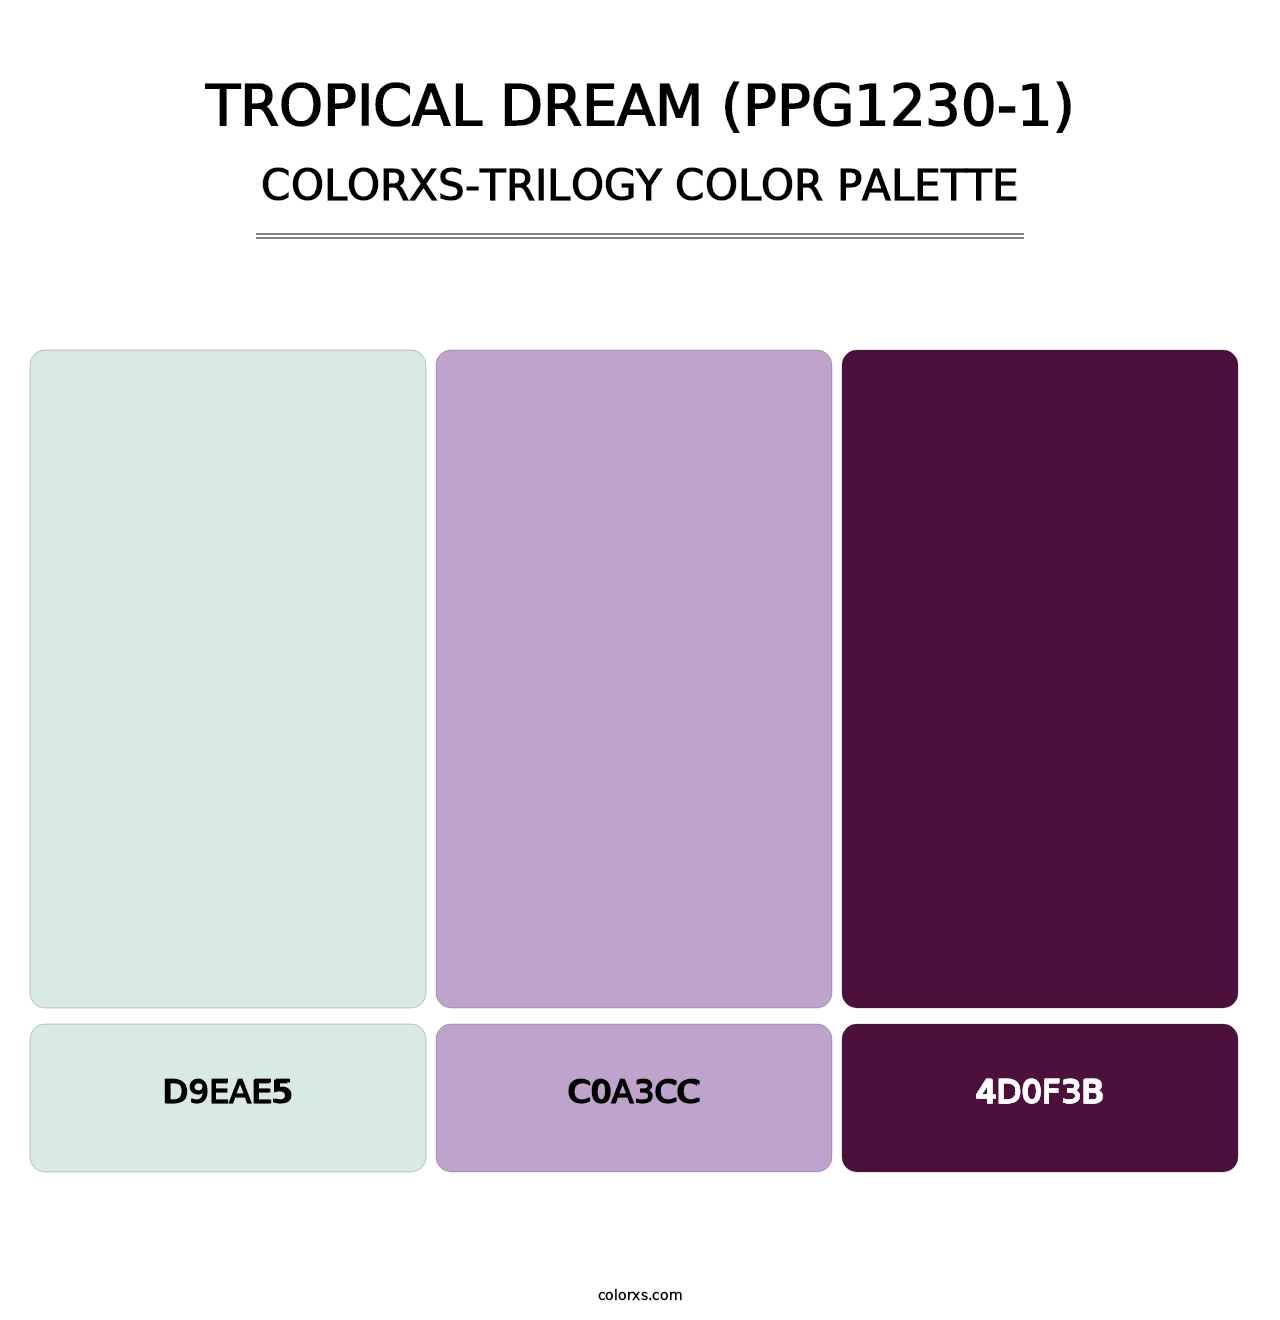 Tropical Dream (PPG1230-1) - Colorxs Trilogy Palette